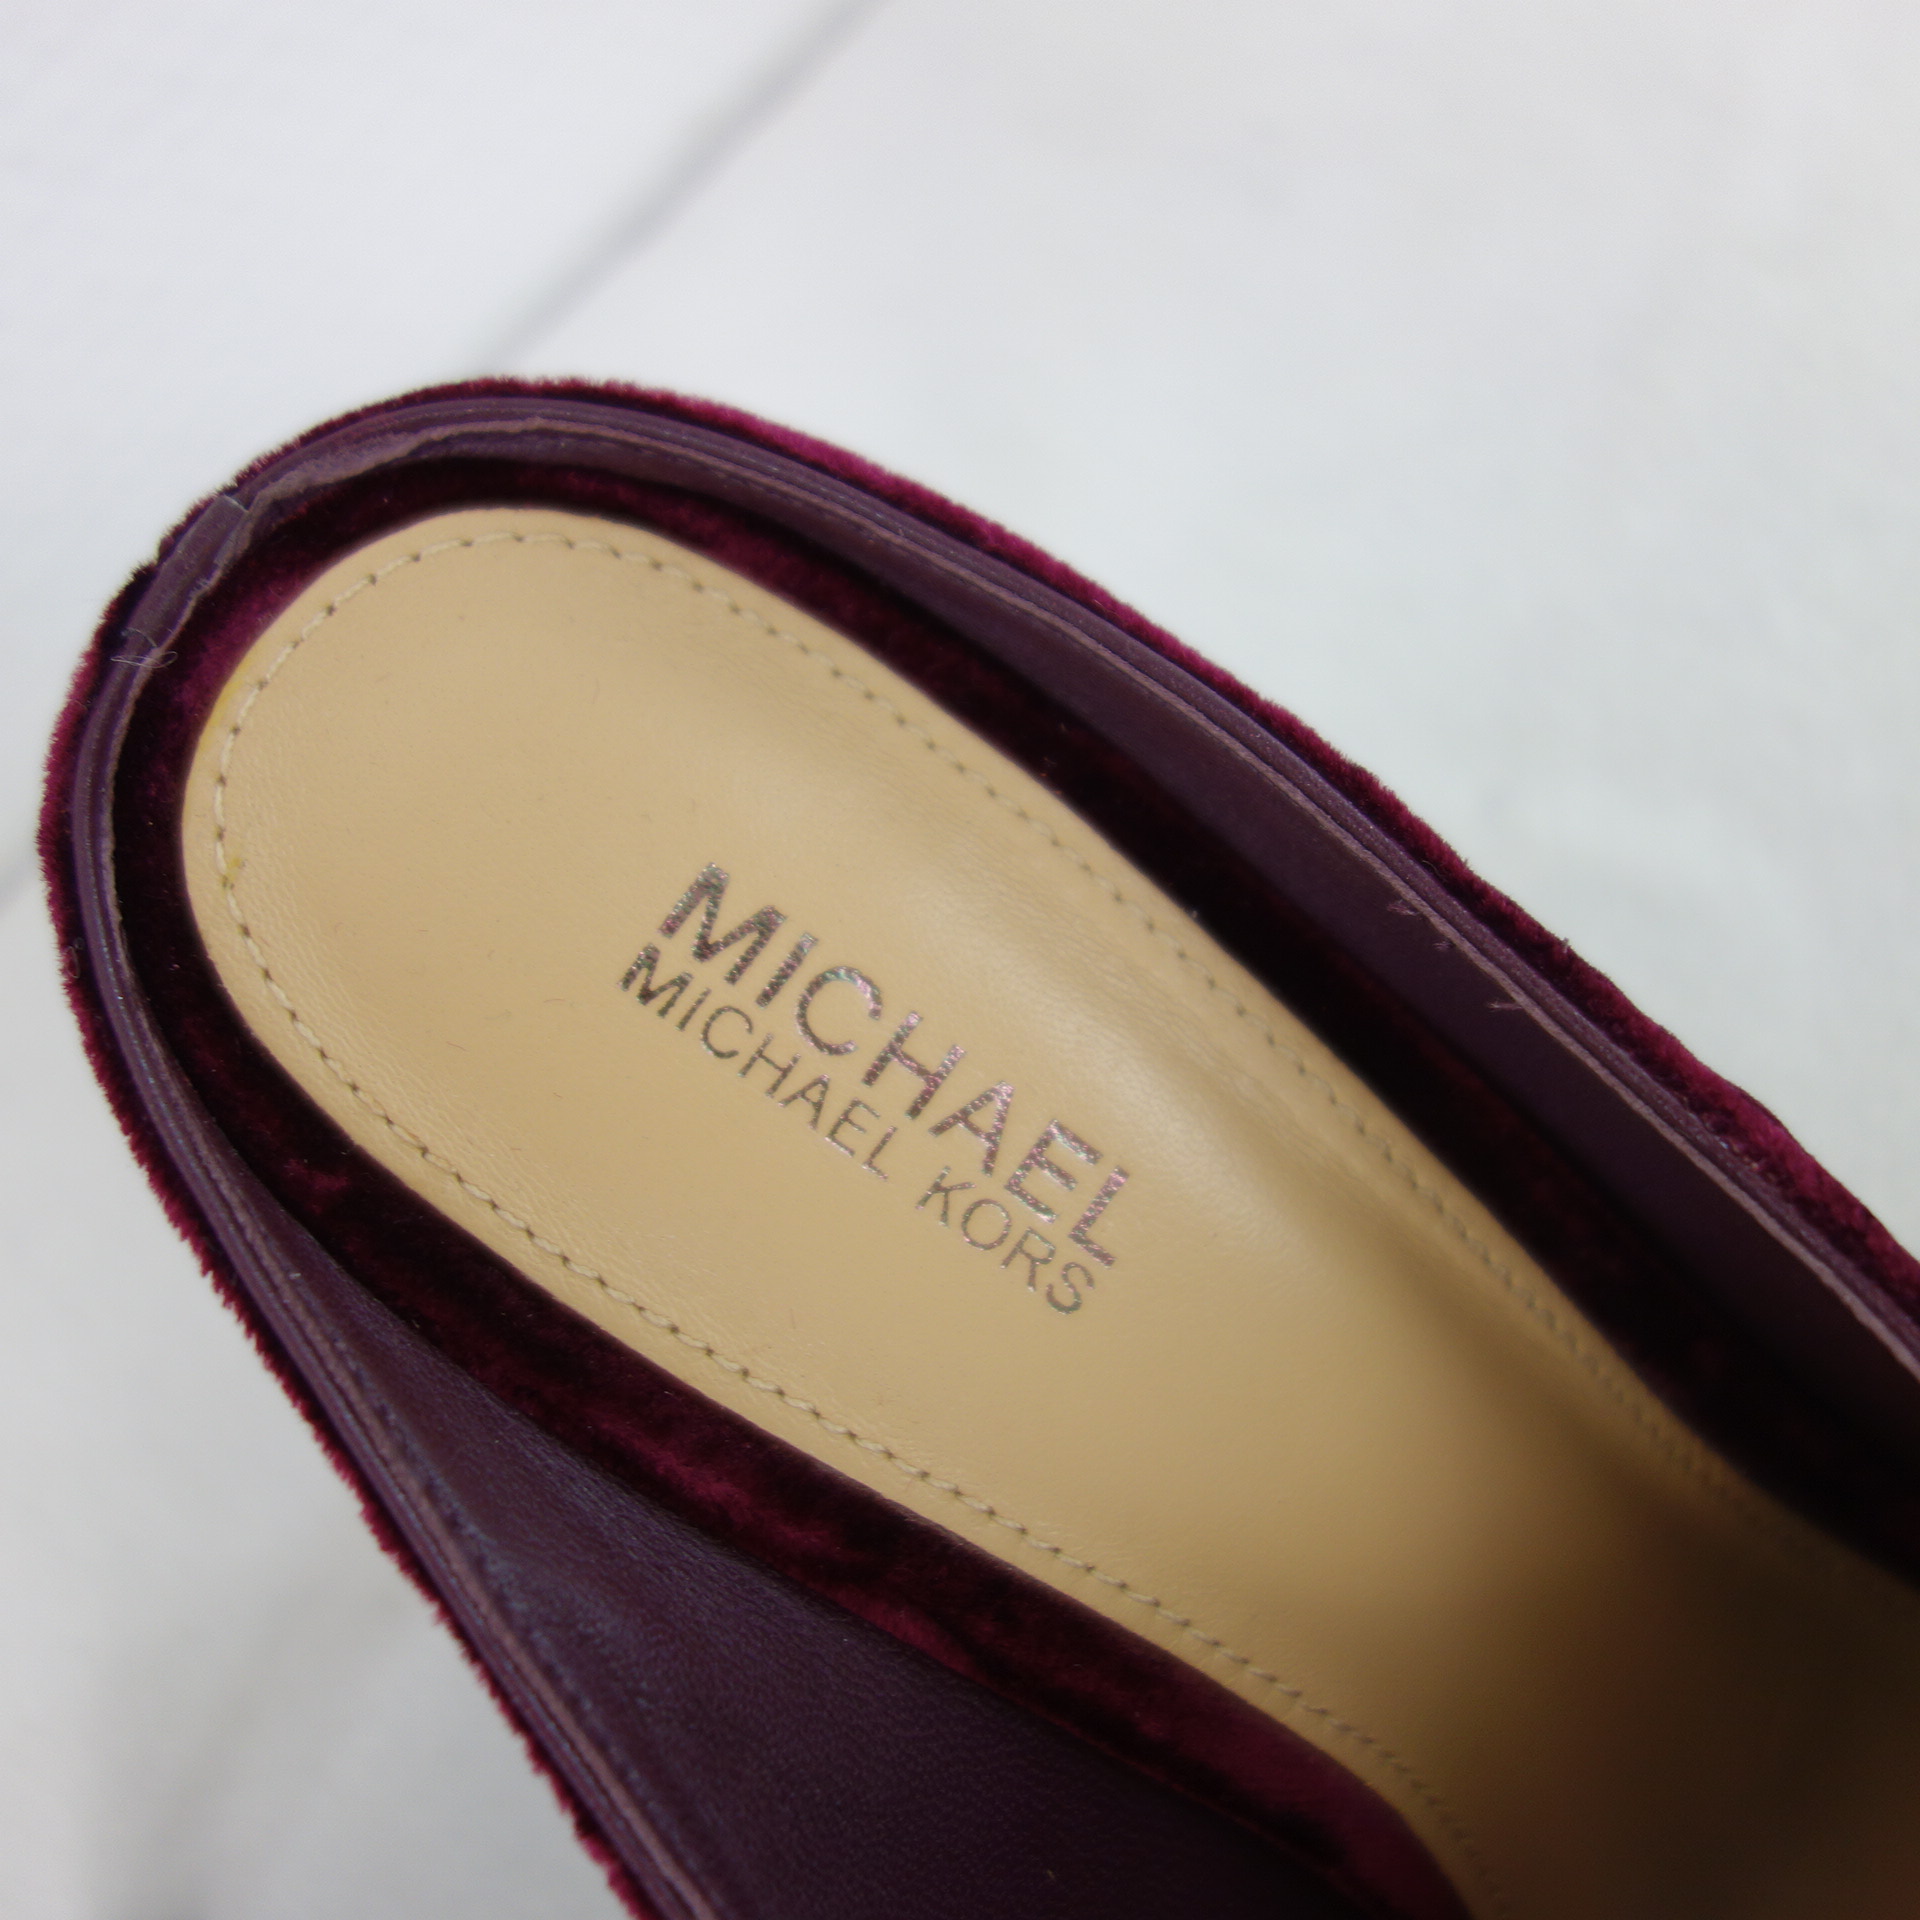 MICHAEL KORS Damen Schuhe Mules Damenschuhe Pumps Pantoletten Samt Leder Bordeaux 